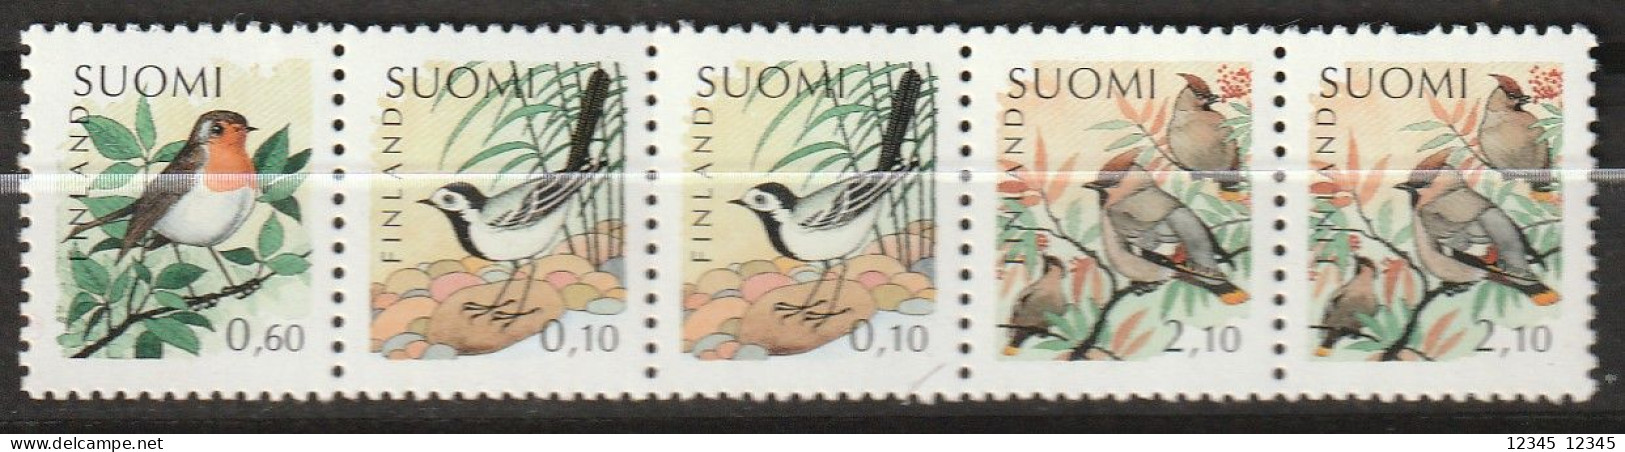 Finland 1992, Postfris MNH, Birds - Carnets